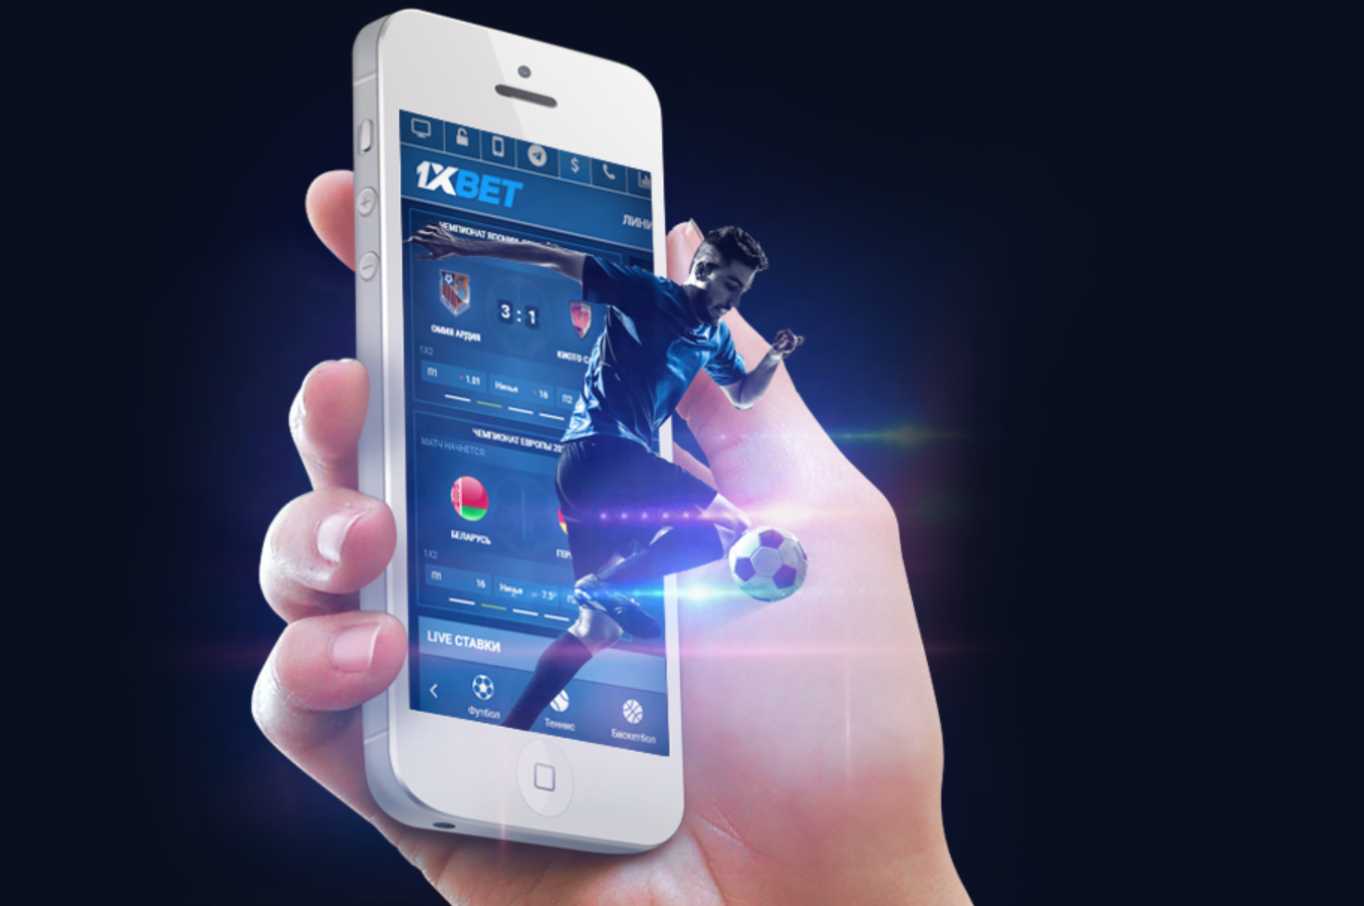 Скачать приложение 1xbet на айфон 5s майнкрафт карта скай варс играть